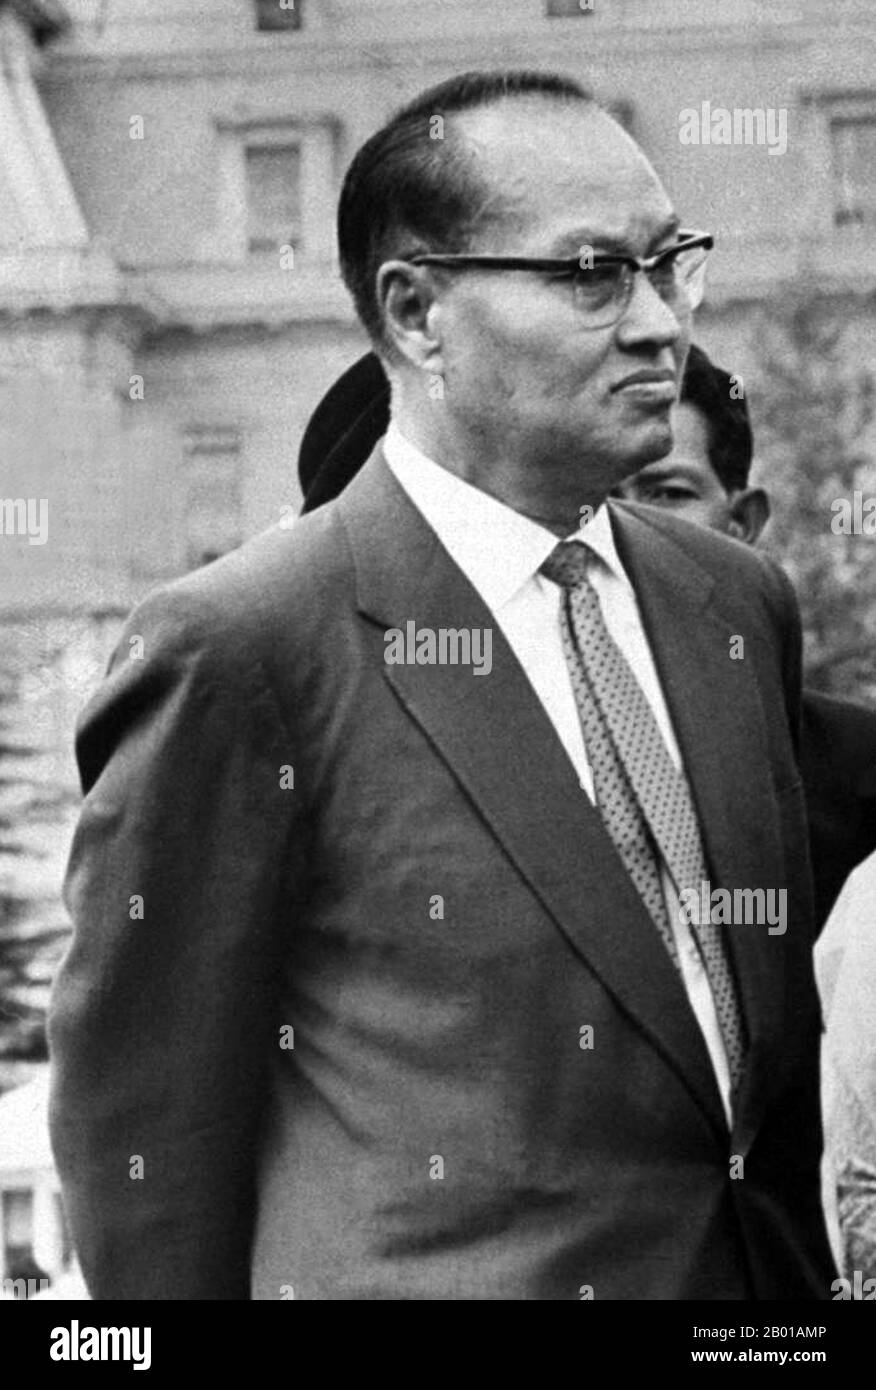 Birma/Myanmar: Ne Win (c. 1910-2002), Premierminister von Burma von 1958 bis 1960 und 1962 bis 1974 und auch Staatsoberhaupt von 1962 bis 1981. Ne Win (geboren am 24. Mai oder 14. Mai 1911 oder 10. Juli 1910 – 5. Dezember 2002) war Politiker und Militärkommandant. Er war von 1958 bis 1960 und 1962 bis 1974 Premierminister von Burma und von 1962 bis 1981 Staatsoberhaupt. Er war auch der Gründer und von 1963 bis 1988 Vorsitzender der Burma Socialist Program Party, die von 1964 bis 1988 die einzige politische Partei im birmanischen Nationalstaat war. Stockfoto